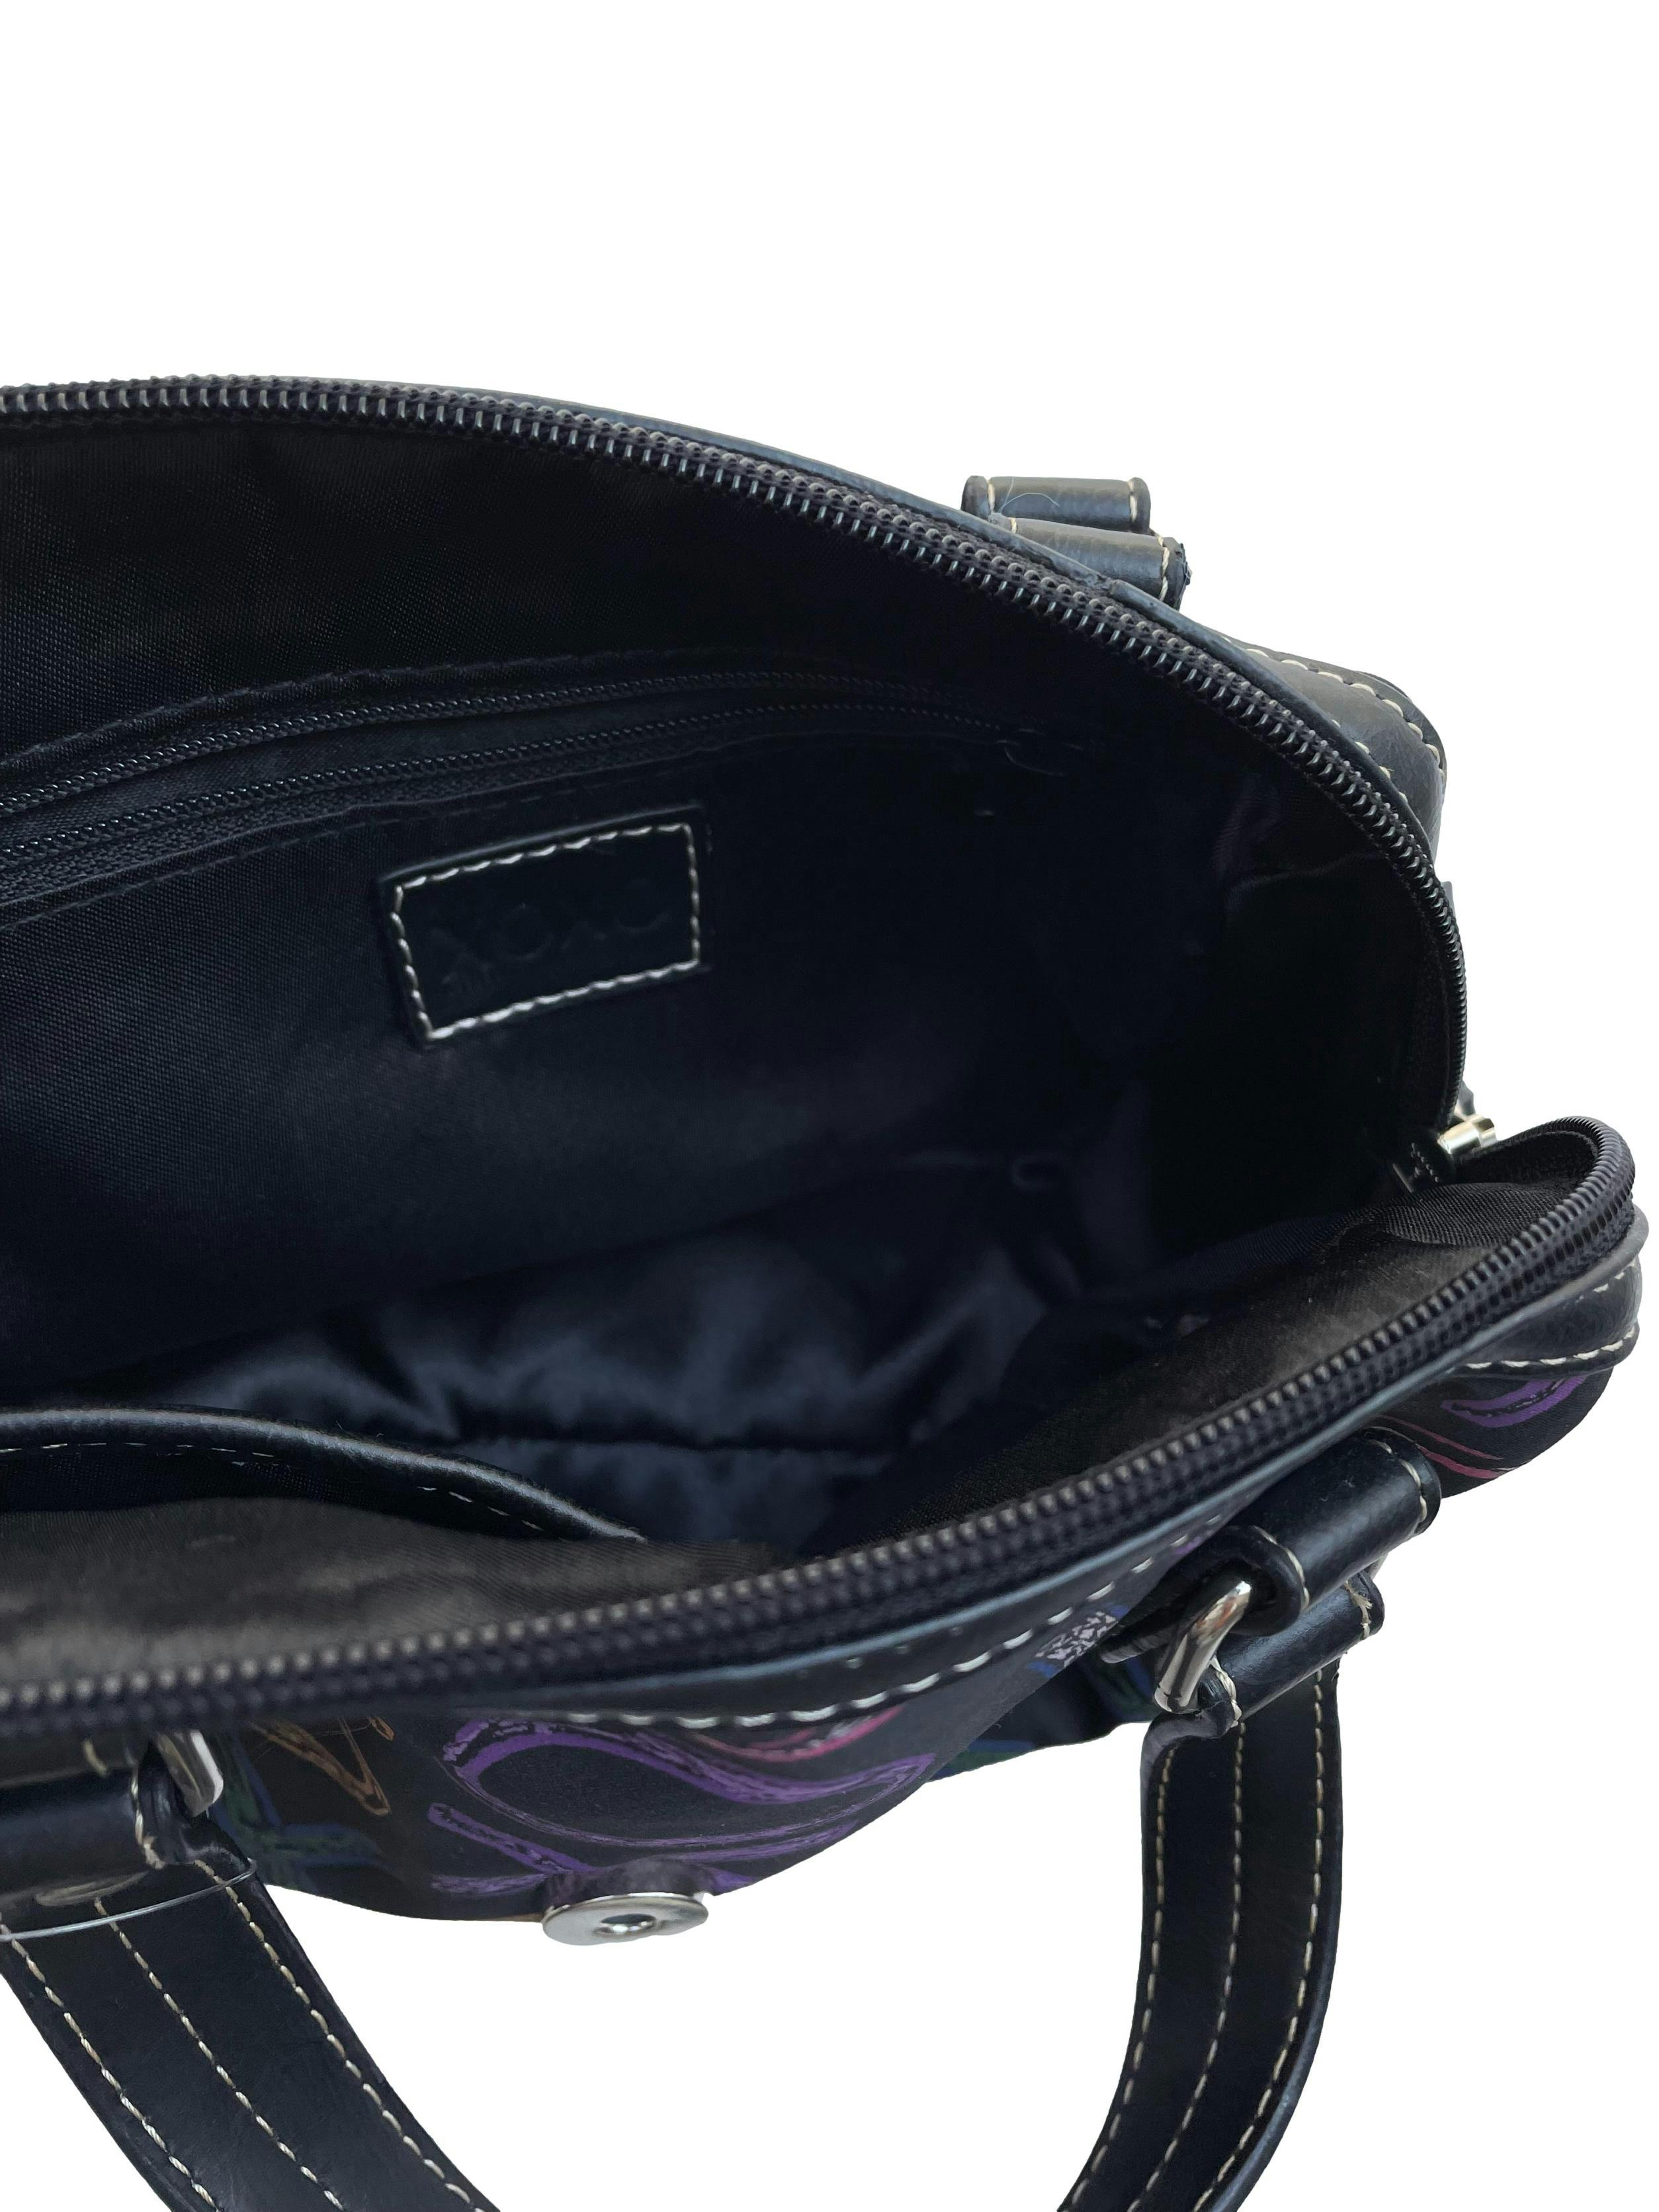 Mini bag  XOXO negro con estampado multicolor, interior forrado con cierres, doble asa y broche metálico. Estado como nuevo. Medidas 22x17x8cm.